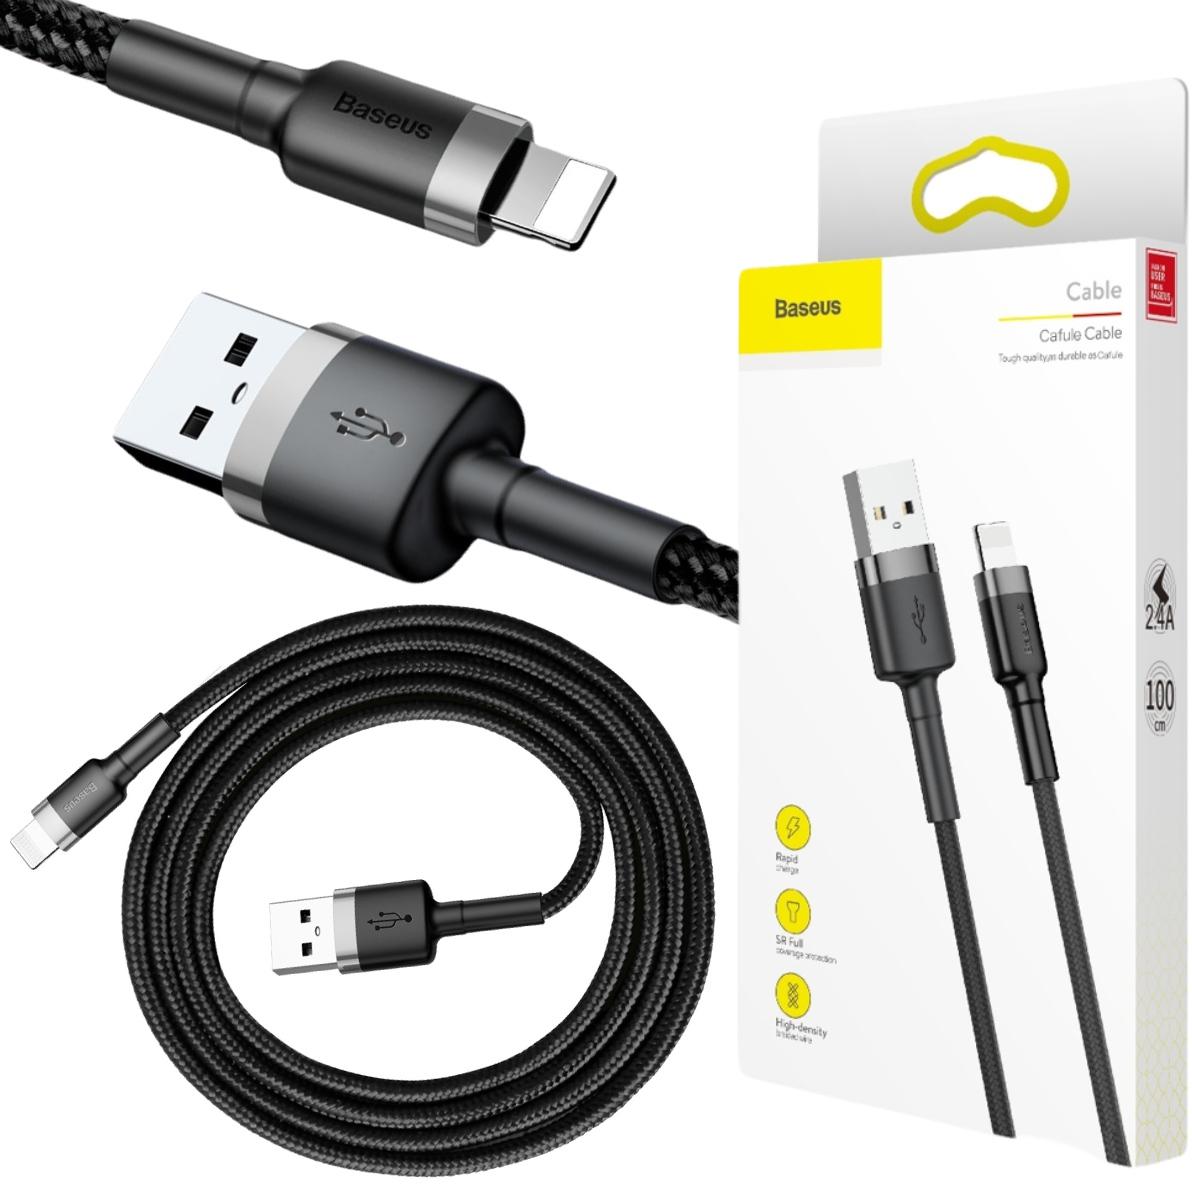 Baseus Cafule Cable wytrzymały nylonowy kabel USB / Lightning QC 3.0 2.4A 1m w oplocie (CALKLF-BG1) - najważniejsze cechy: